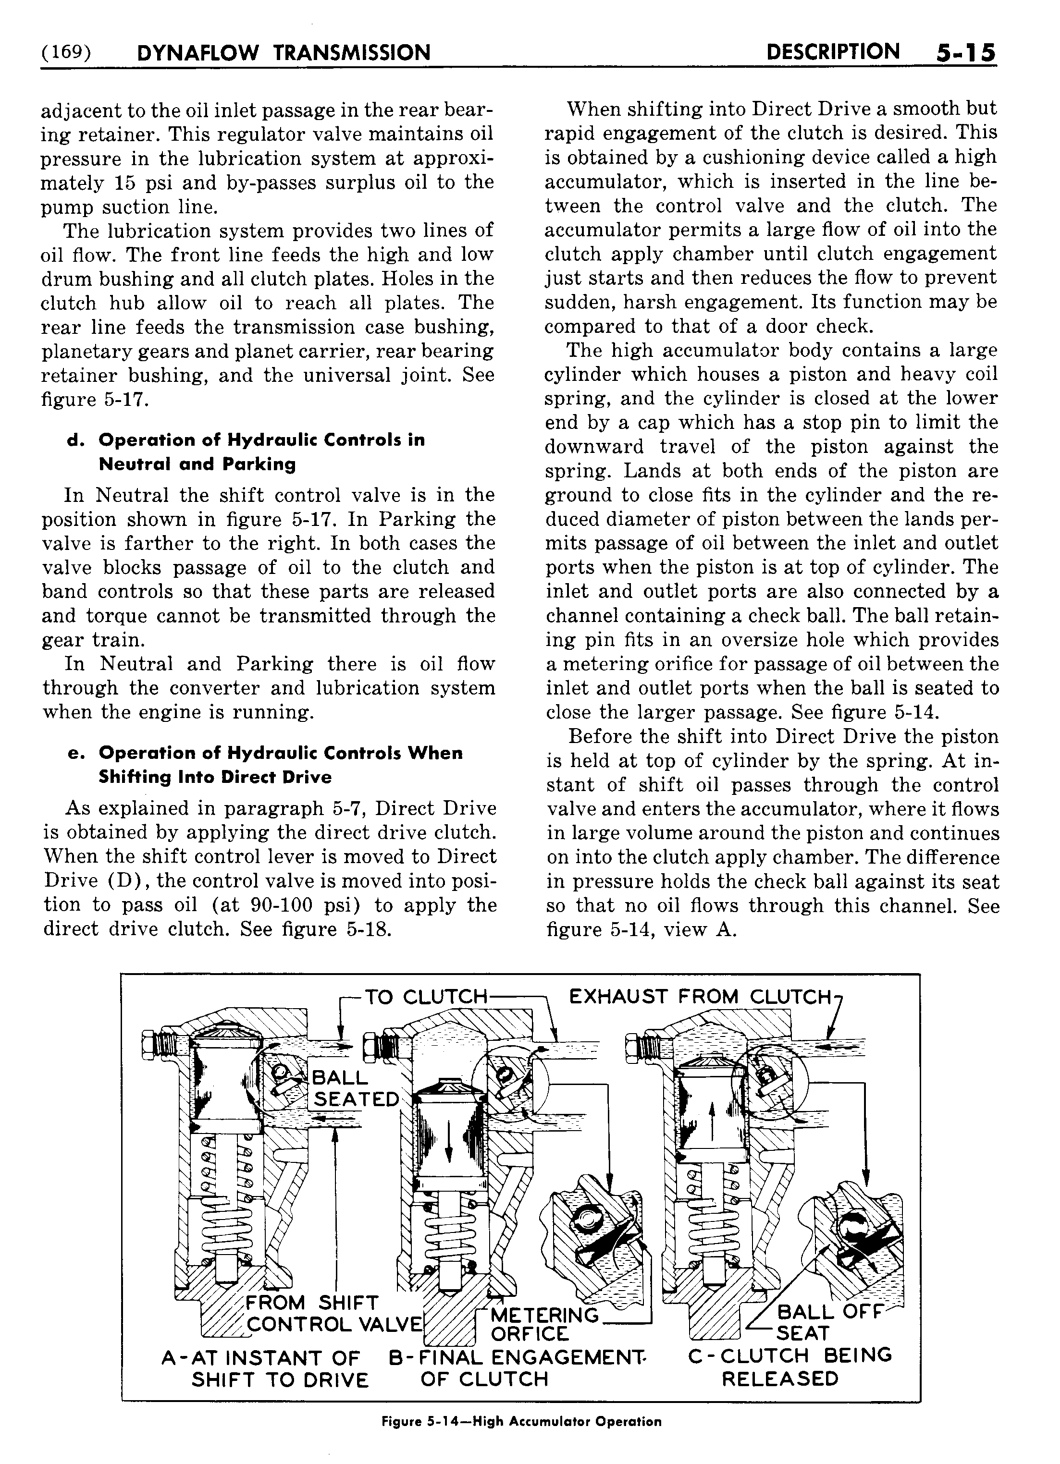 n_06 1954 Buick Shop Manual - Dynaflow-015-015.jpg